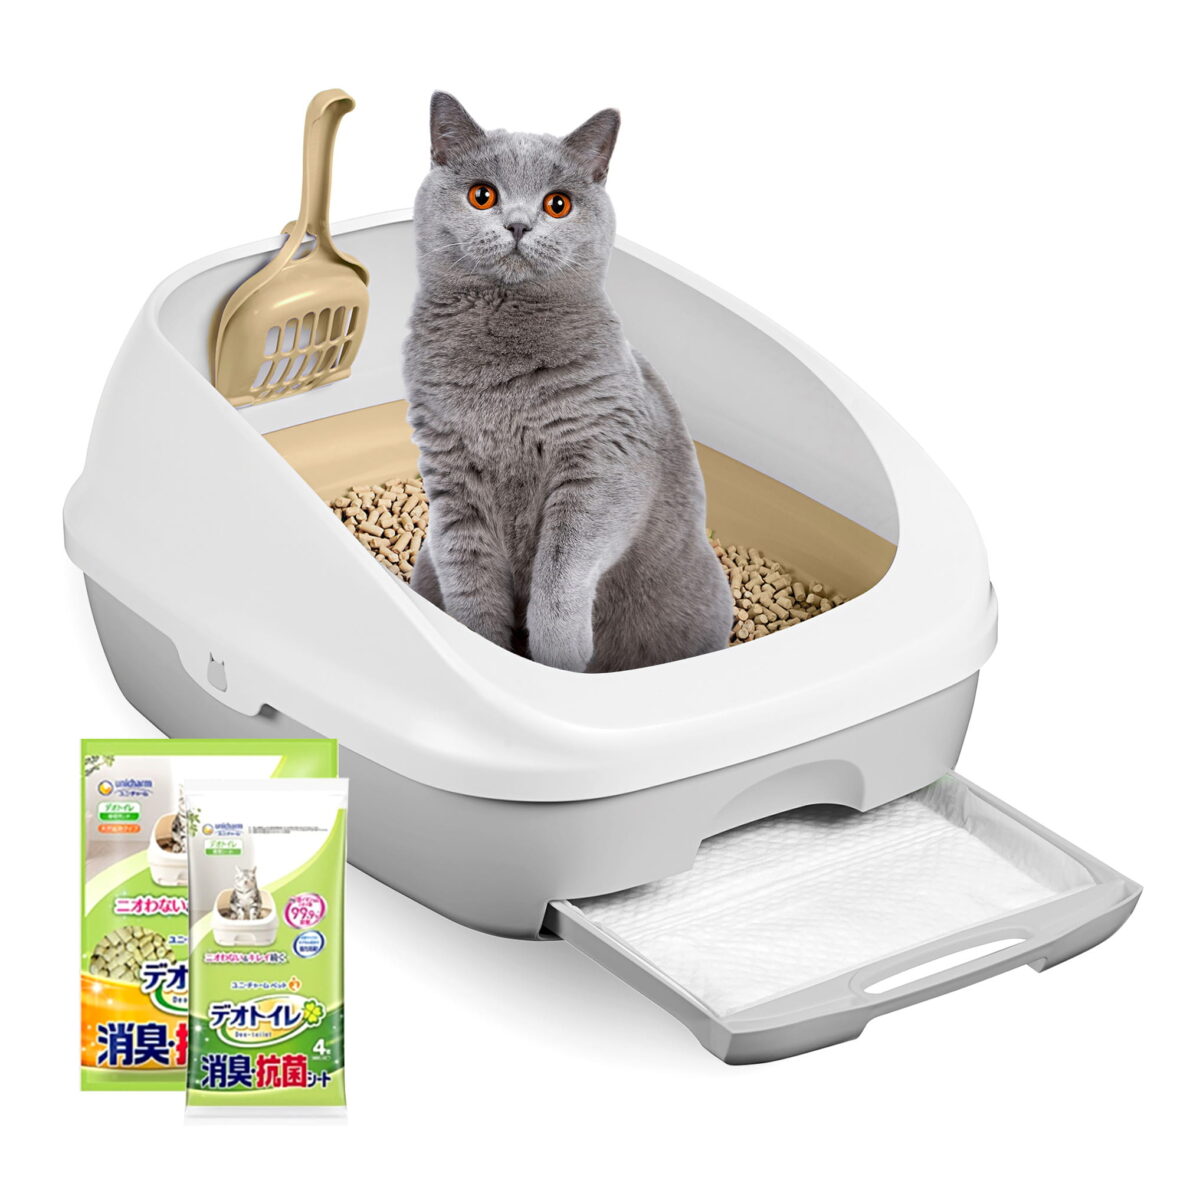 Classic Cat Litter Box – Starter Kit